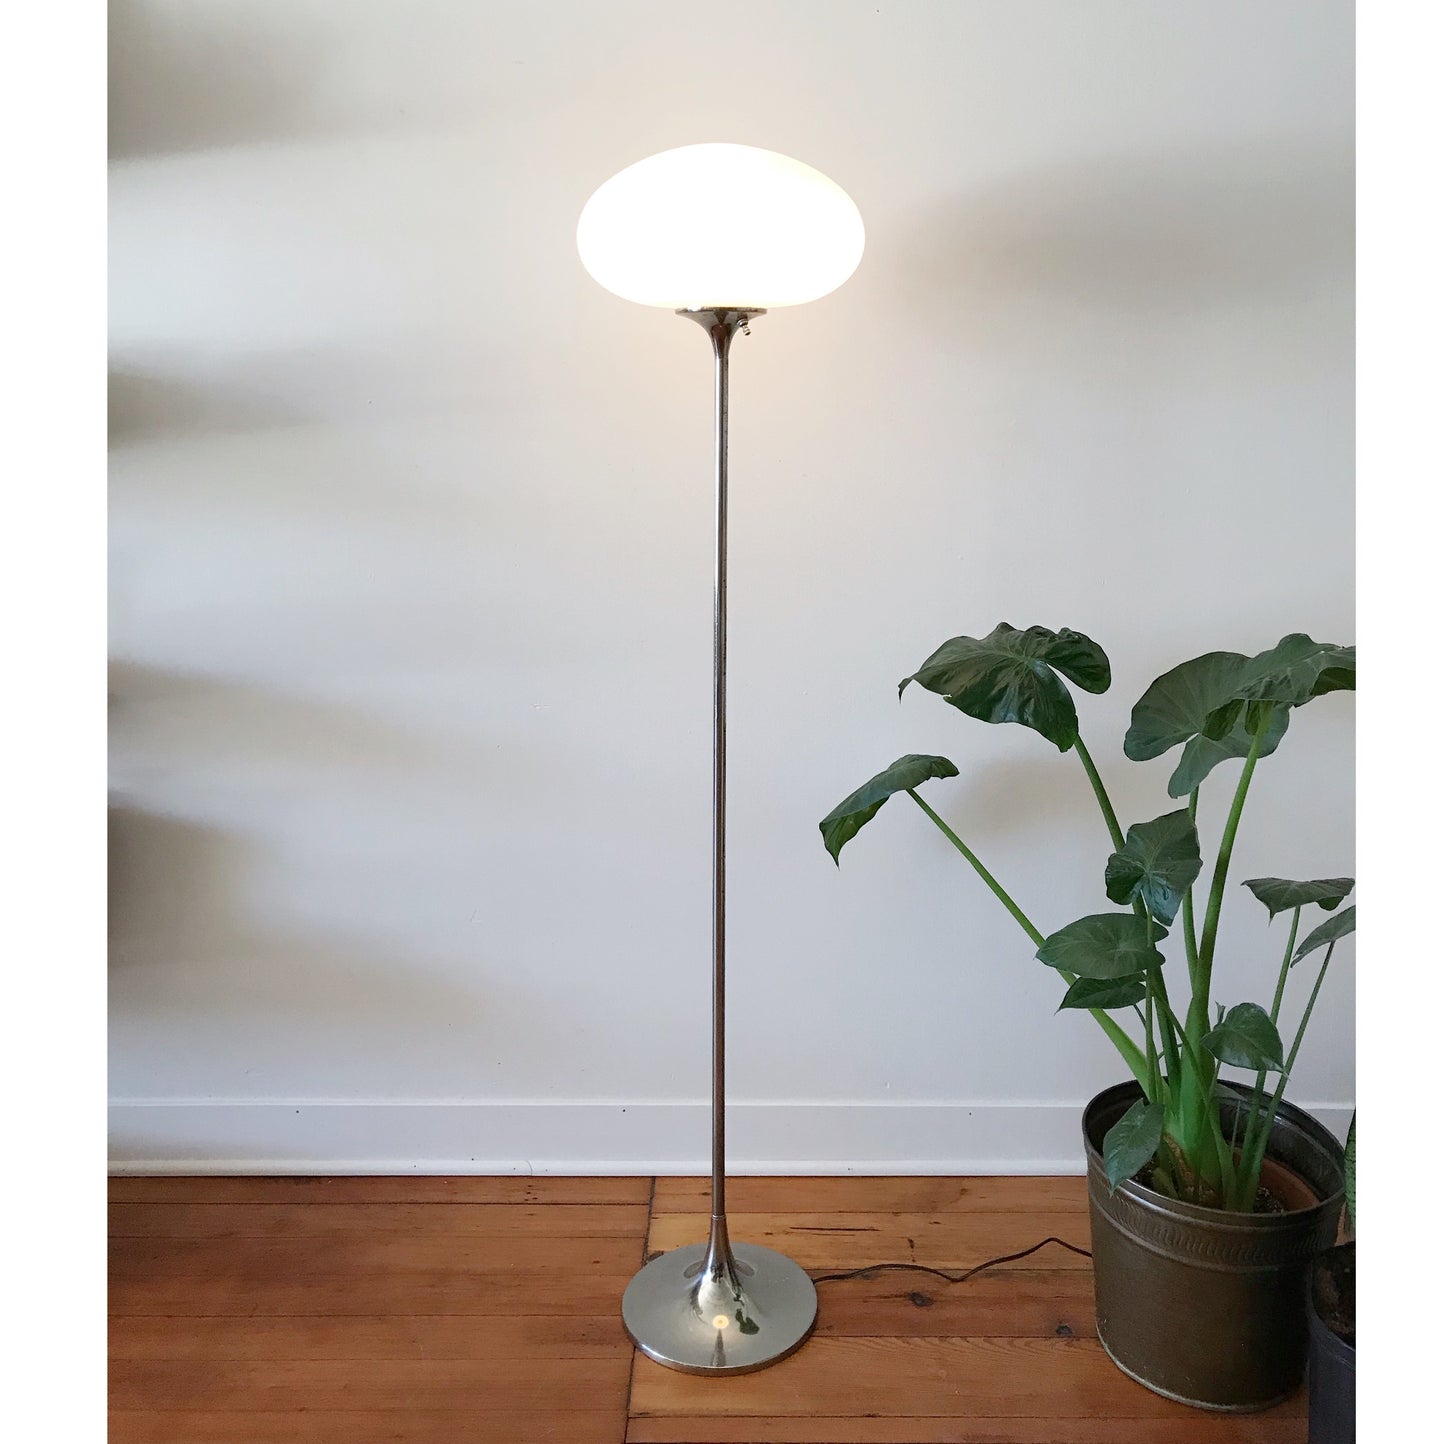 Vintage Mushroom Floor Lamp by Laurel Lamp Co.